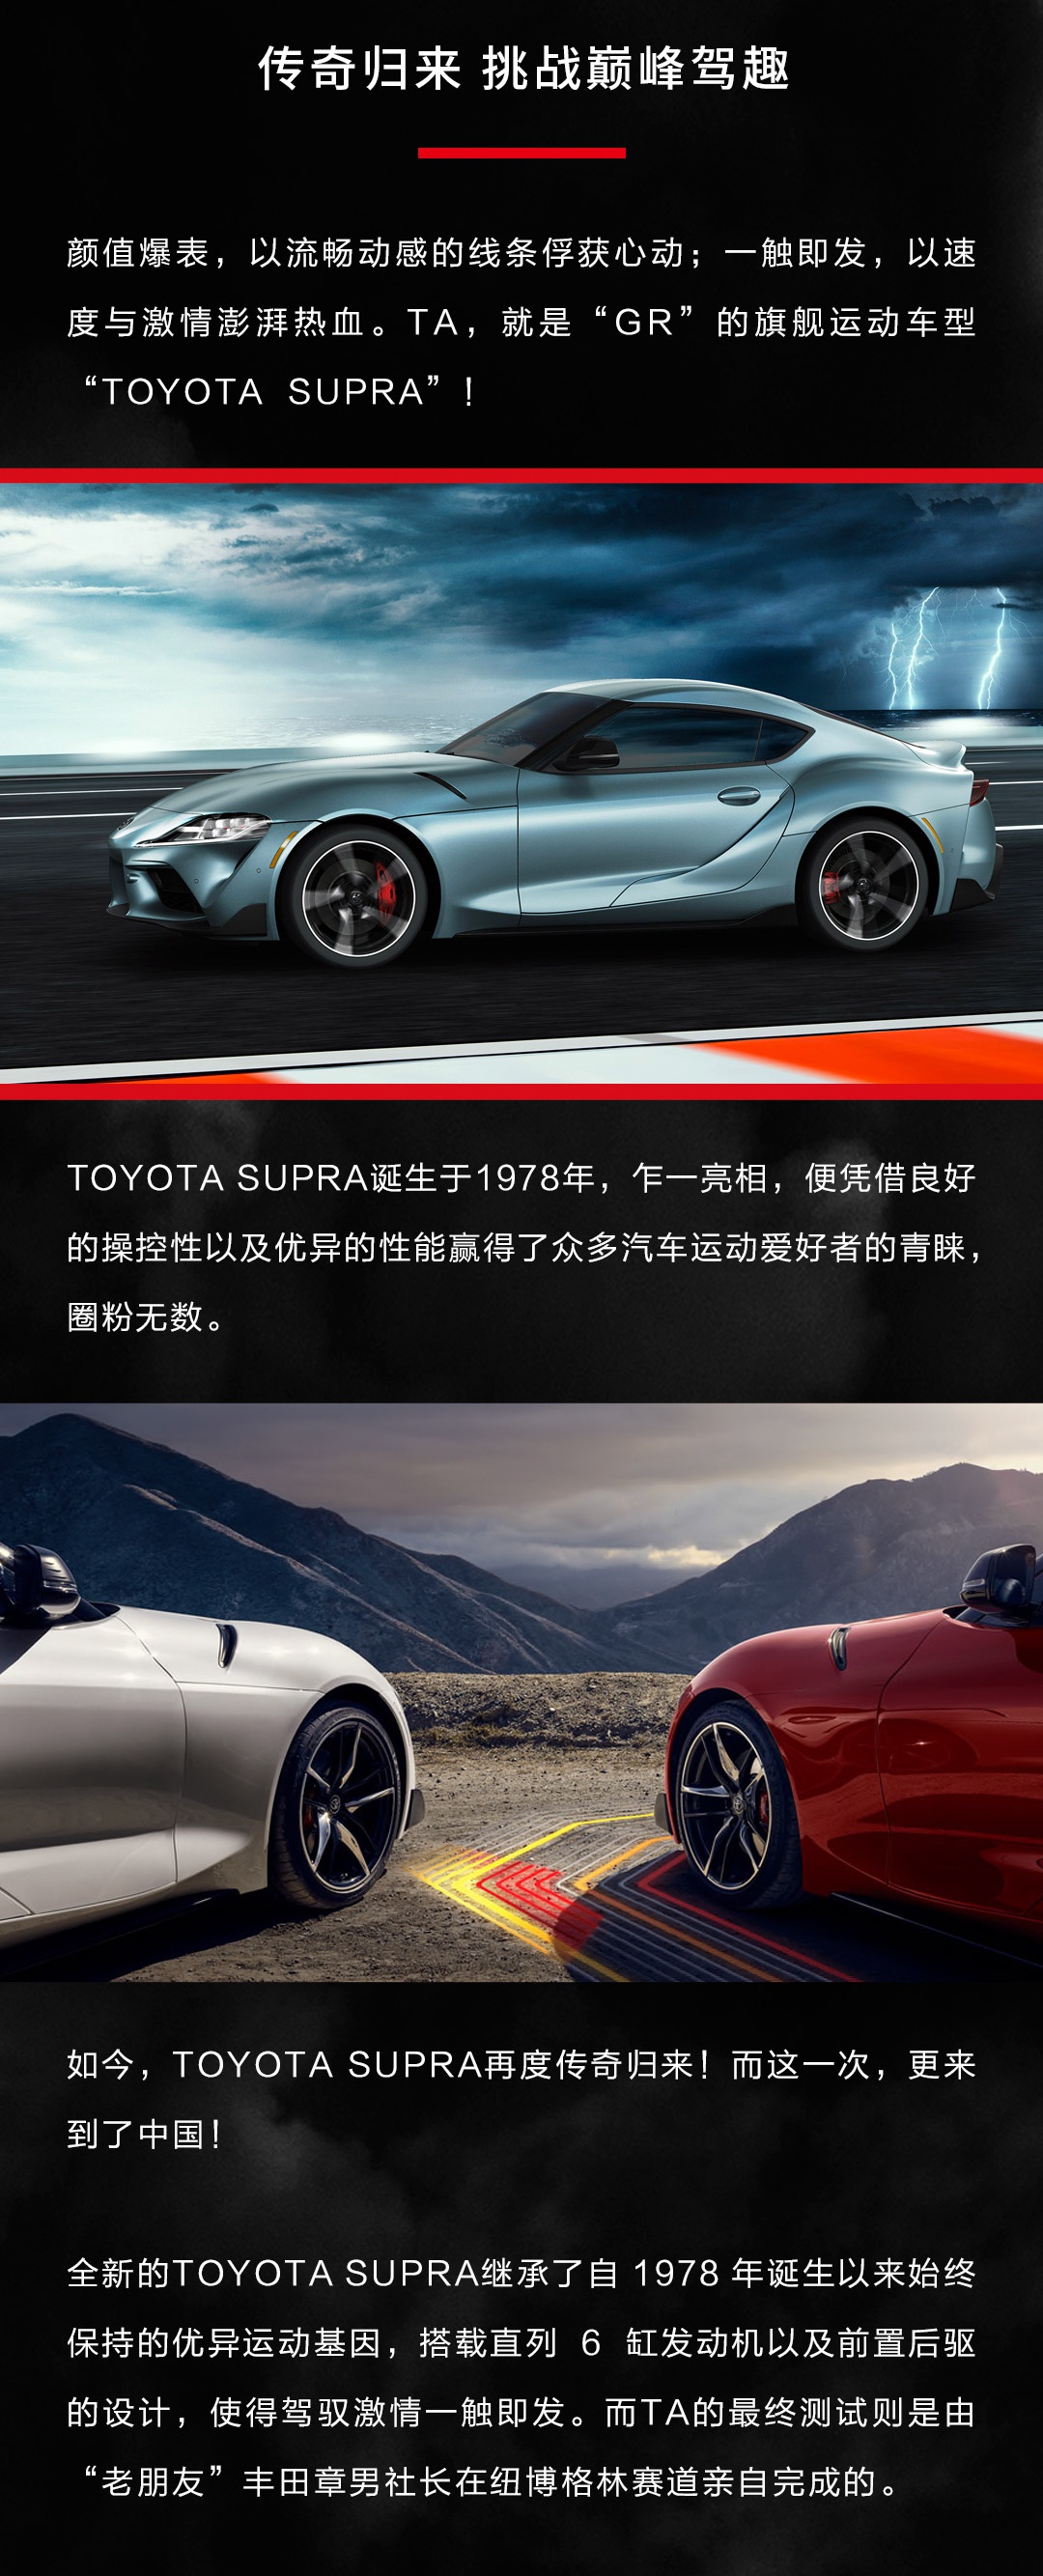 丰田运动品牌“GR”及旗下旗舰车型SUPRA引进中国市场